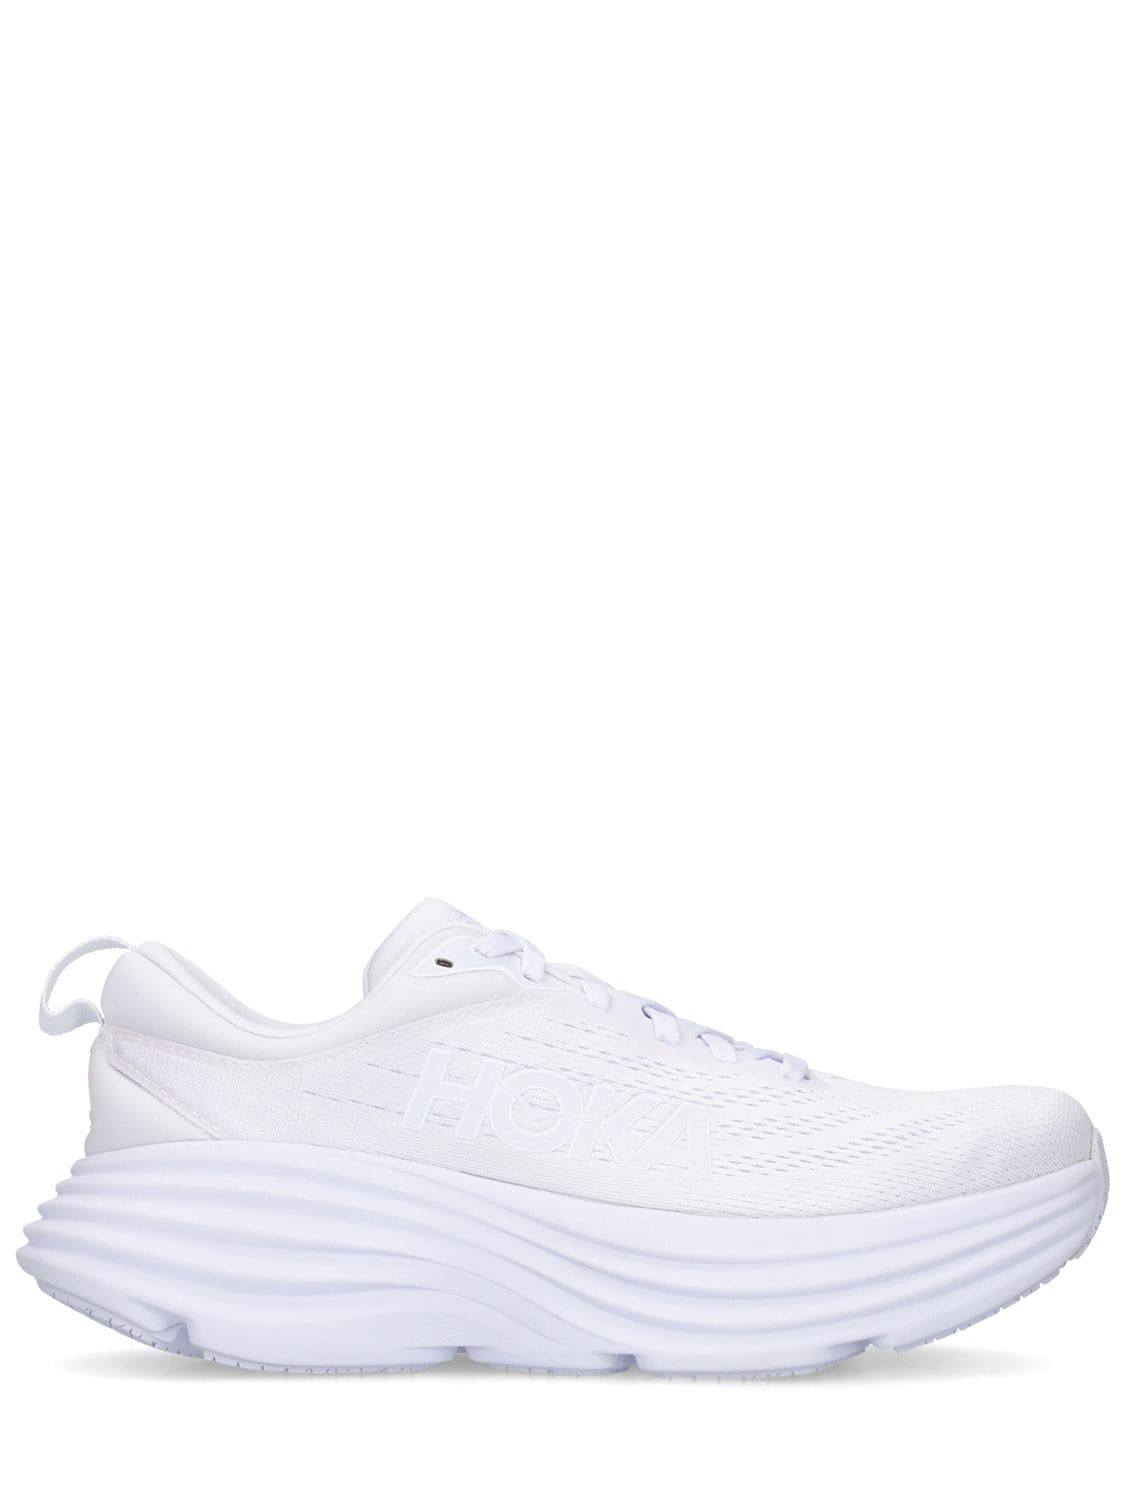 Hoka One One Bondi 8 Lifestyle Sneakers In White